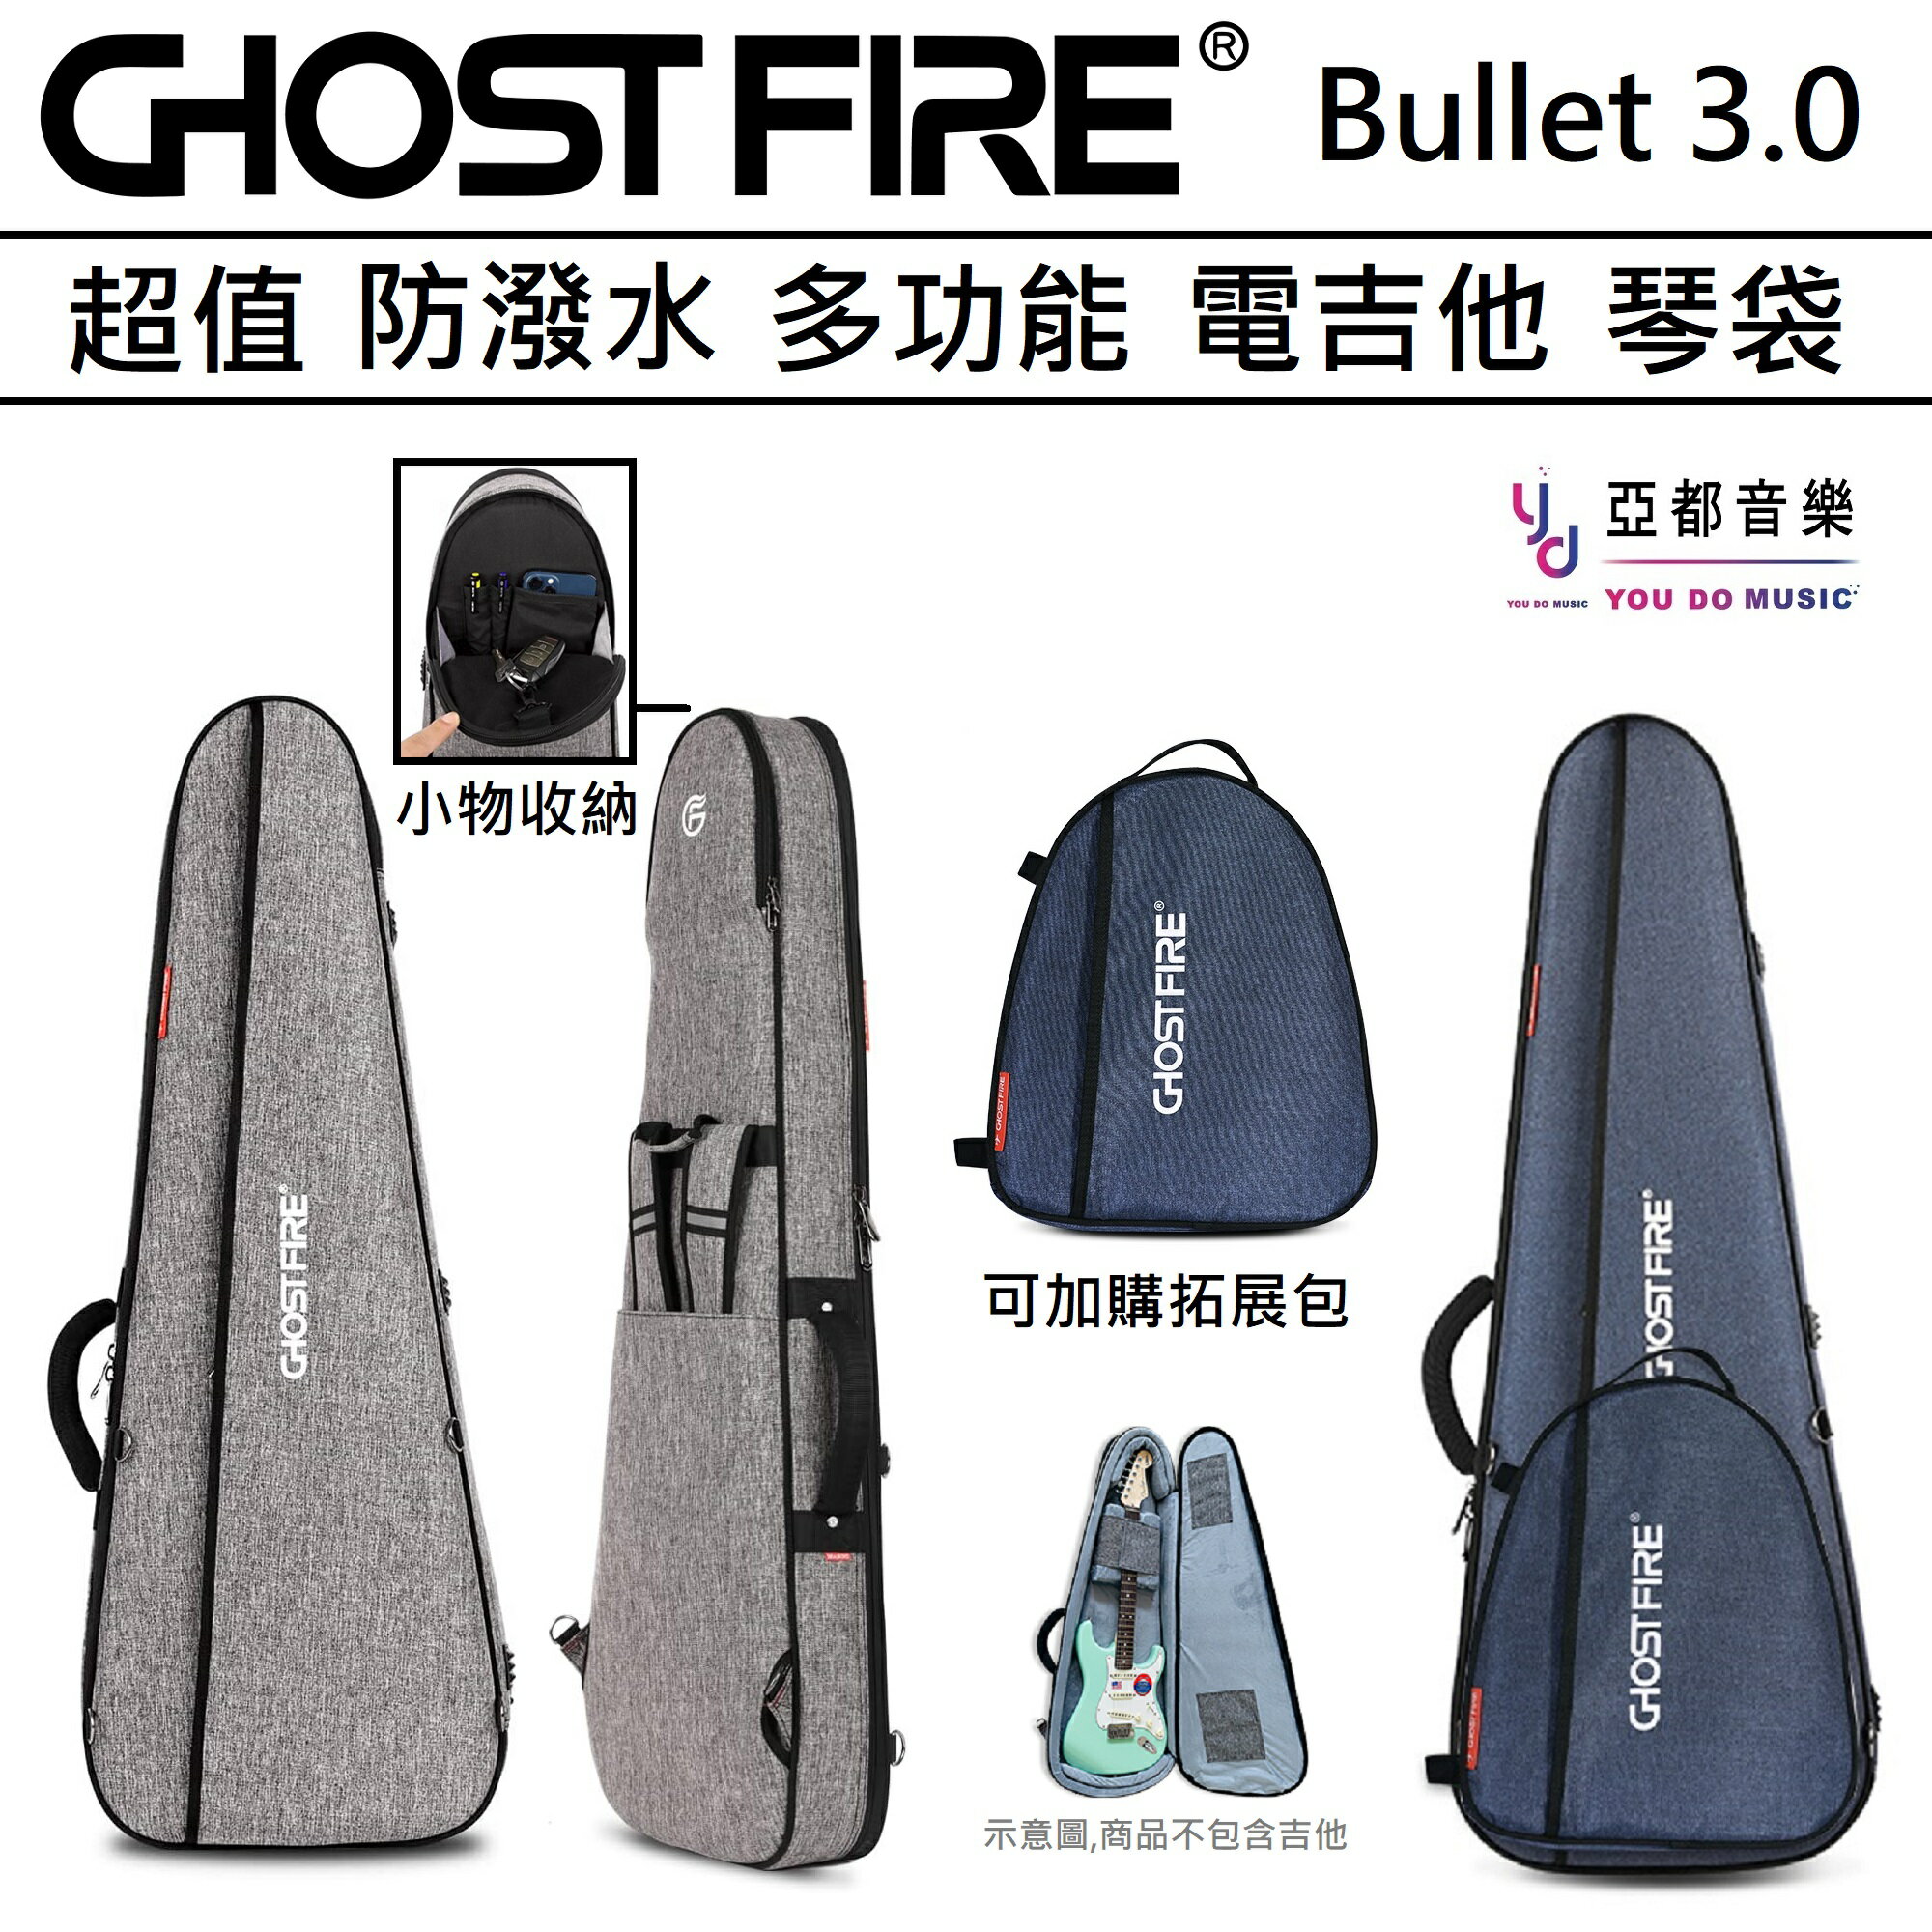 現貨可分期 Ghost Fire Bullet 3.0 BAG 藍 灰 兩色 電吉他袋 子彈 大三角 琴袋 防潑水 雙肩背